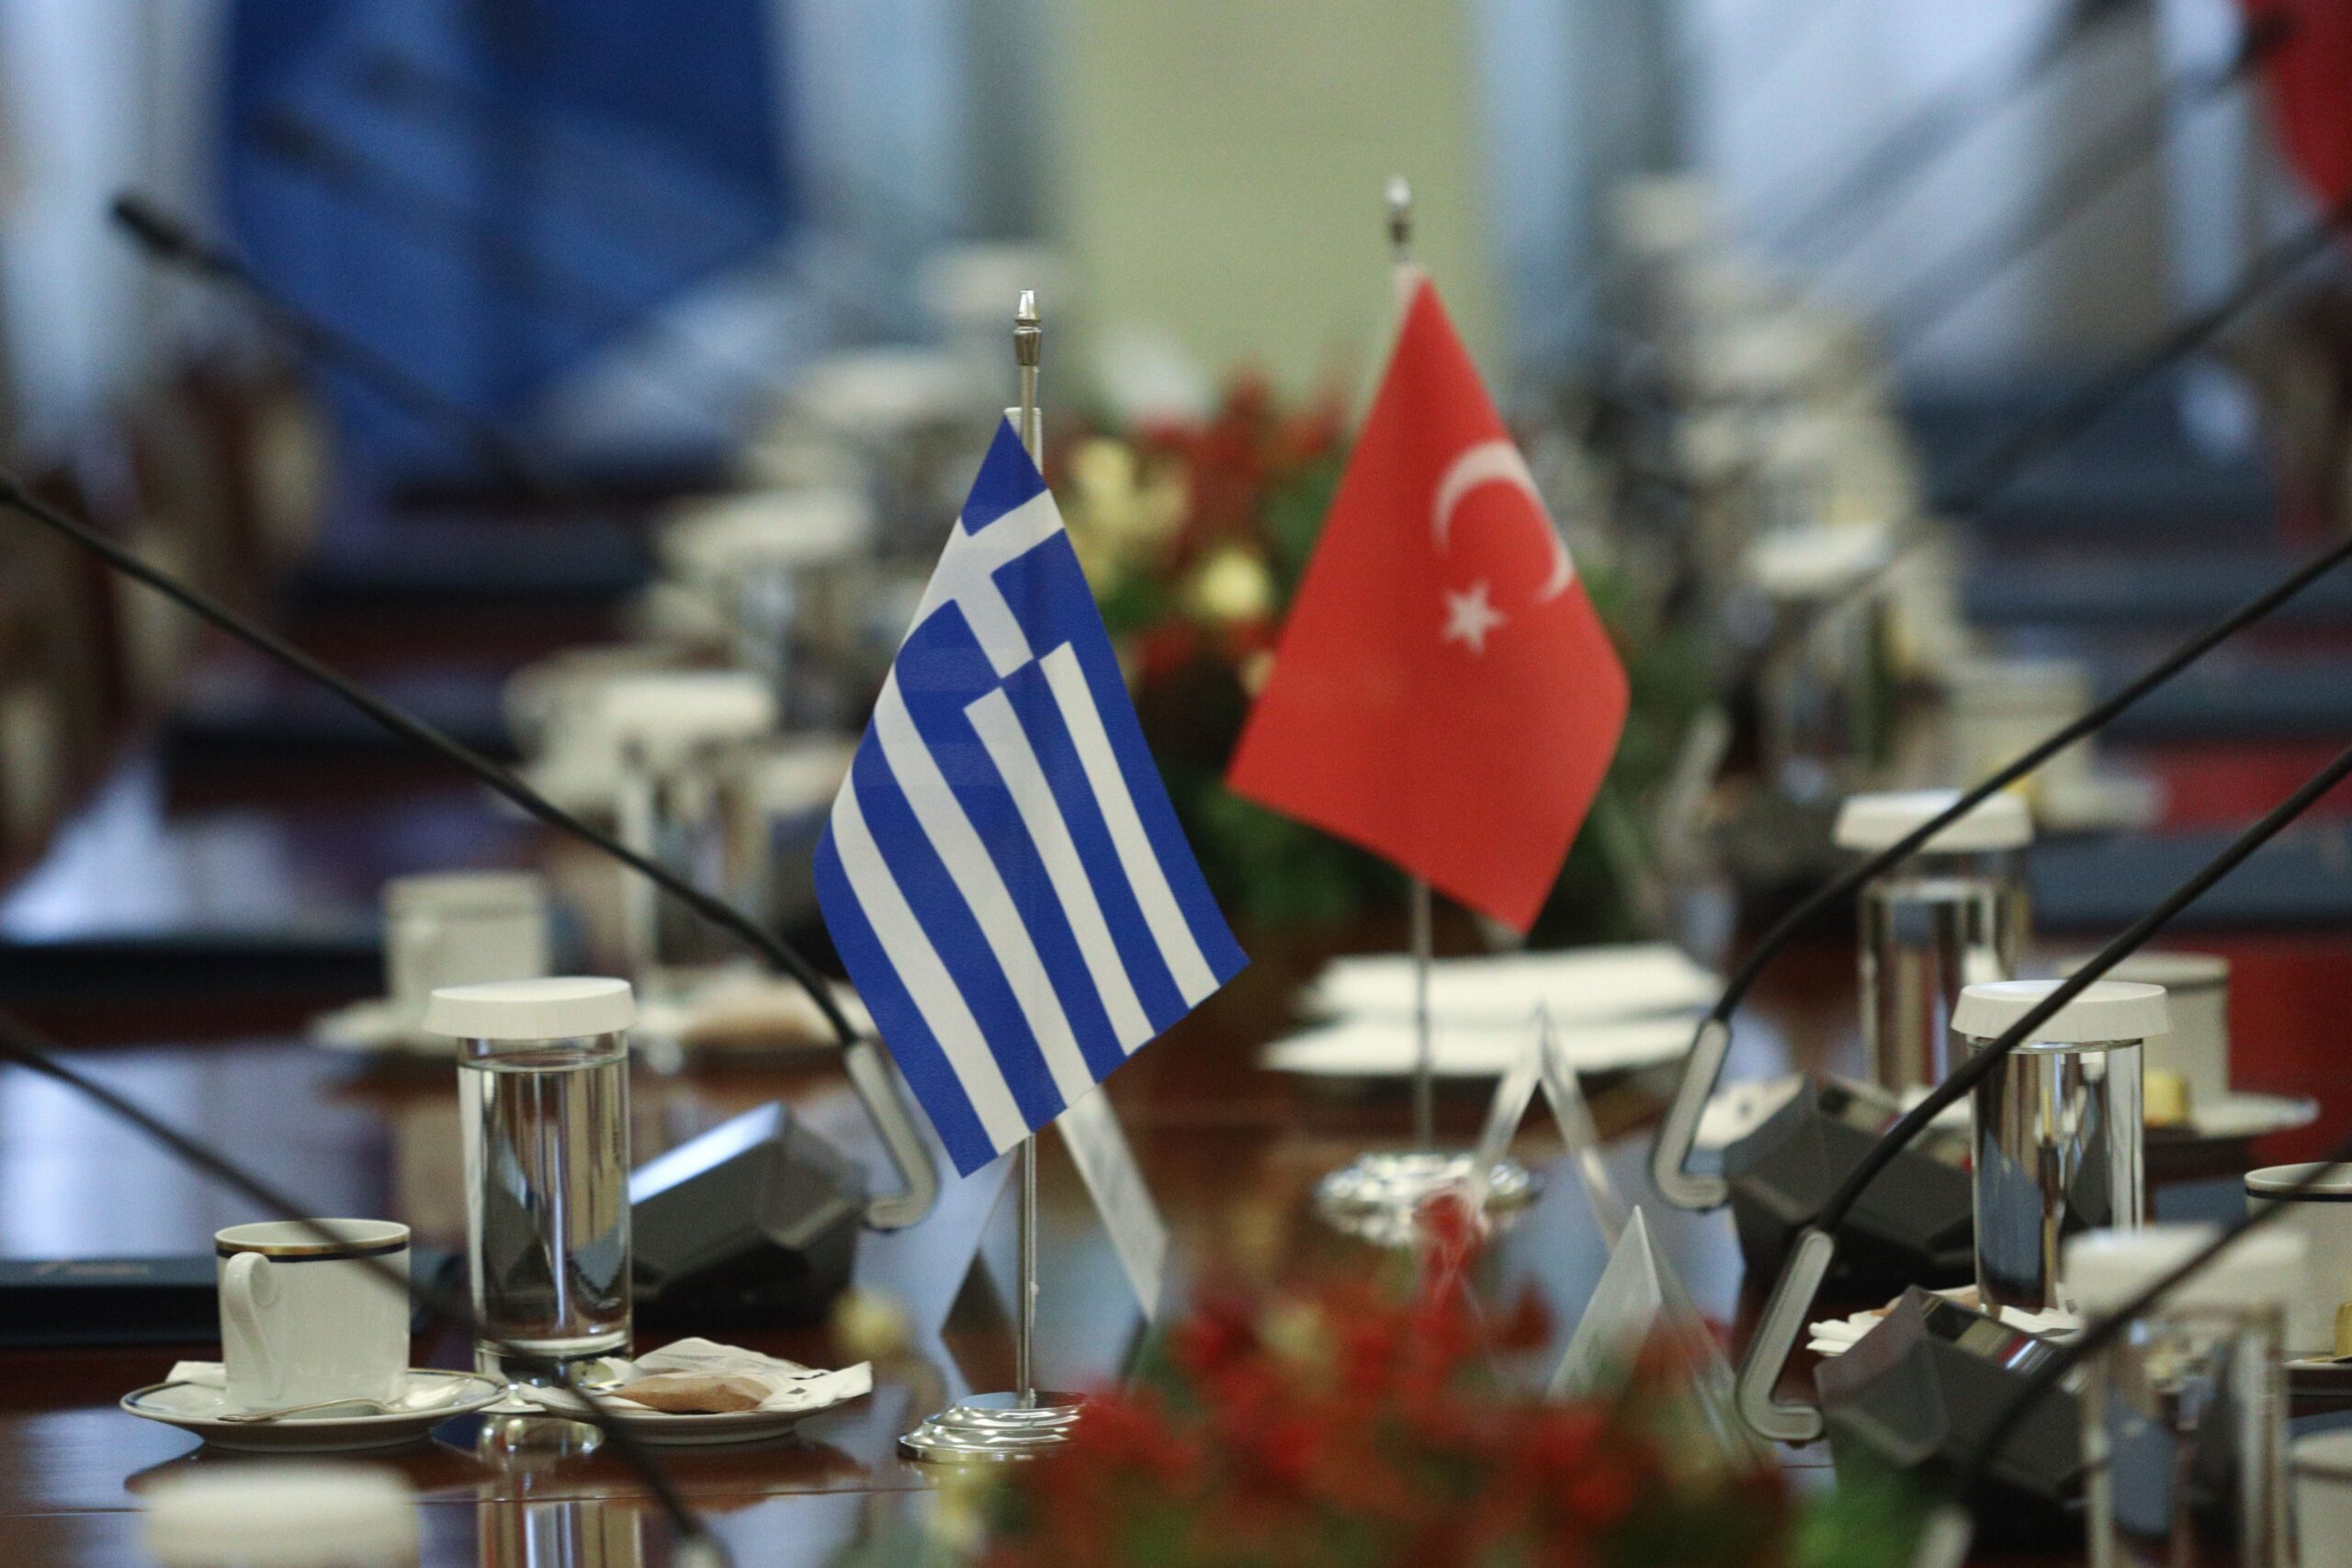 Οι 15 συμφωνίες και μνημόνια που υπέγραψαν Ελλάδα και Τουρκία – Τι περιλαμβάνουν